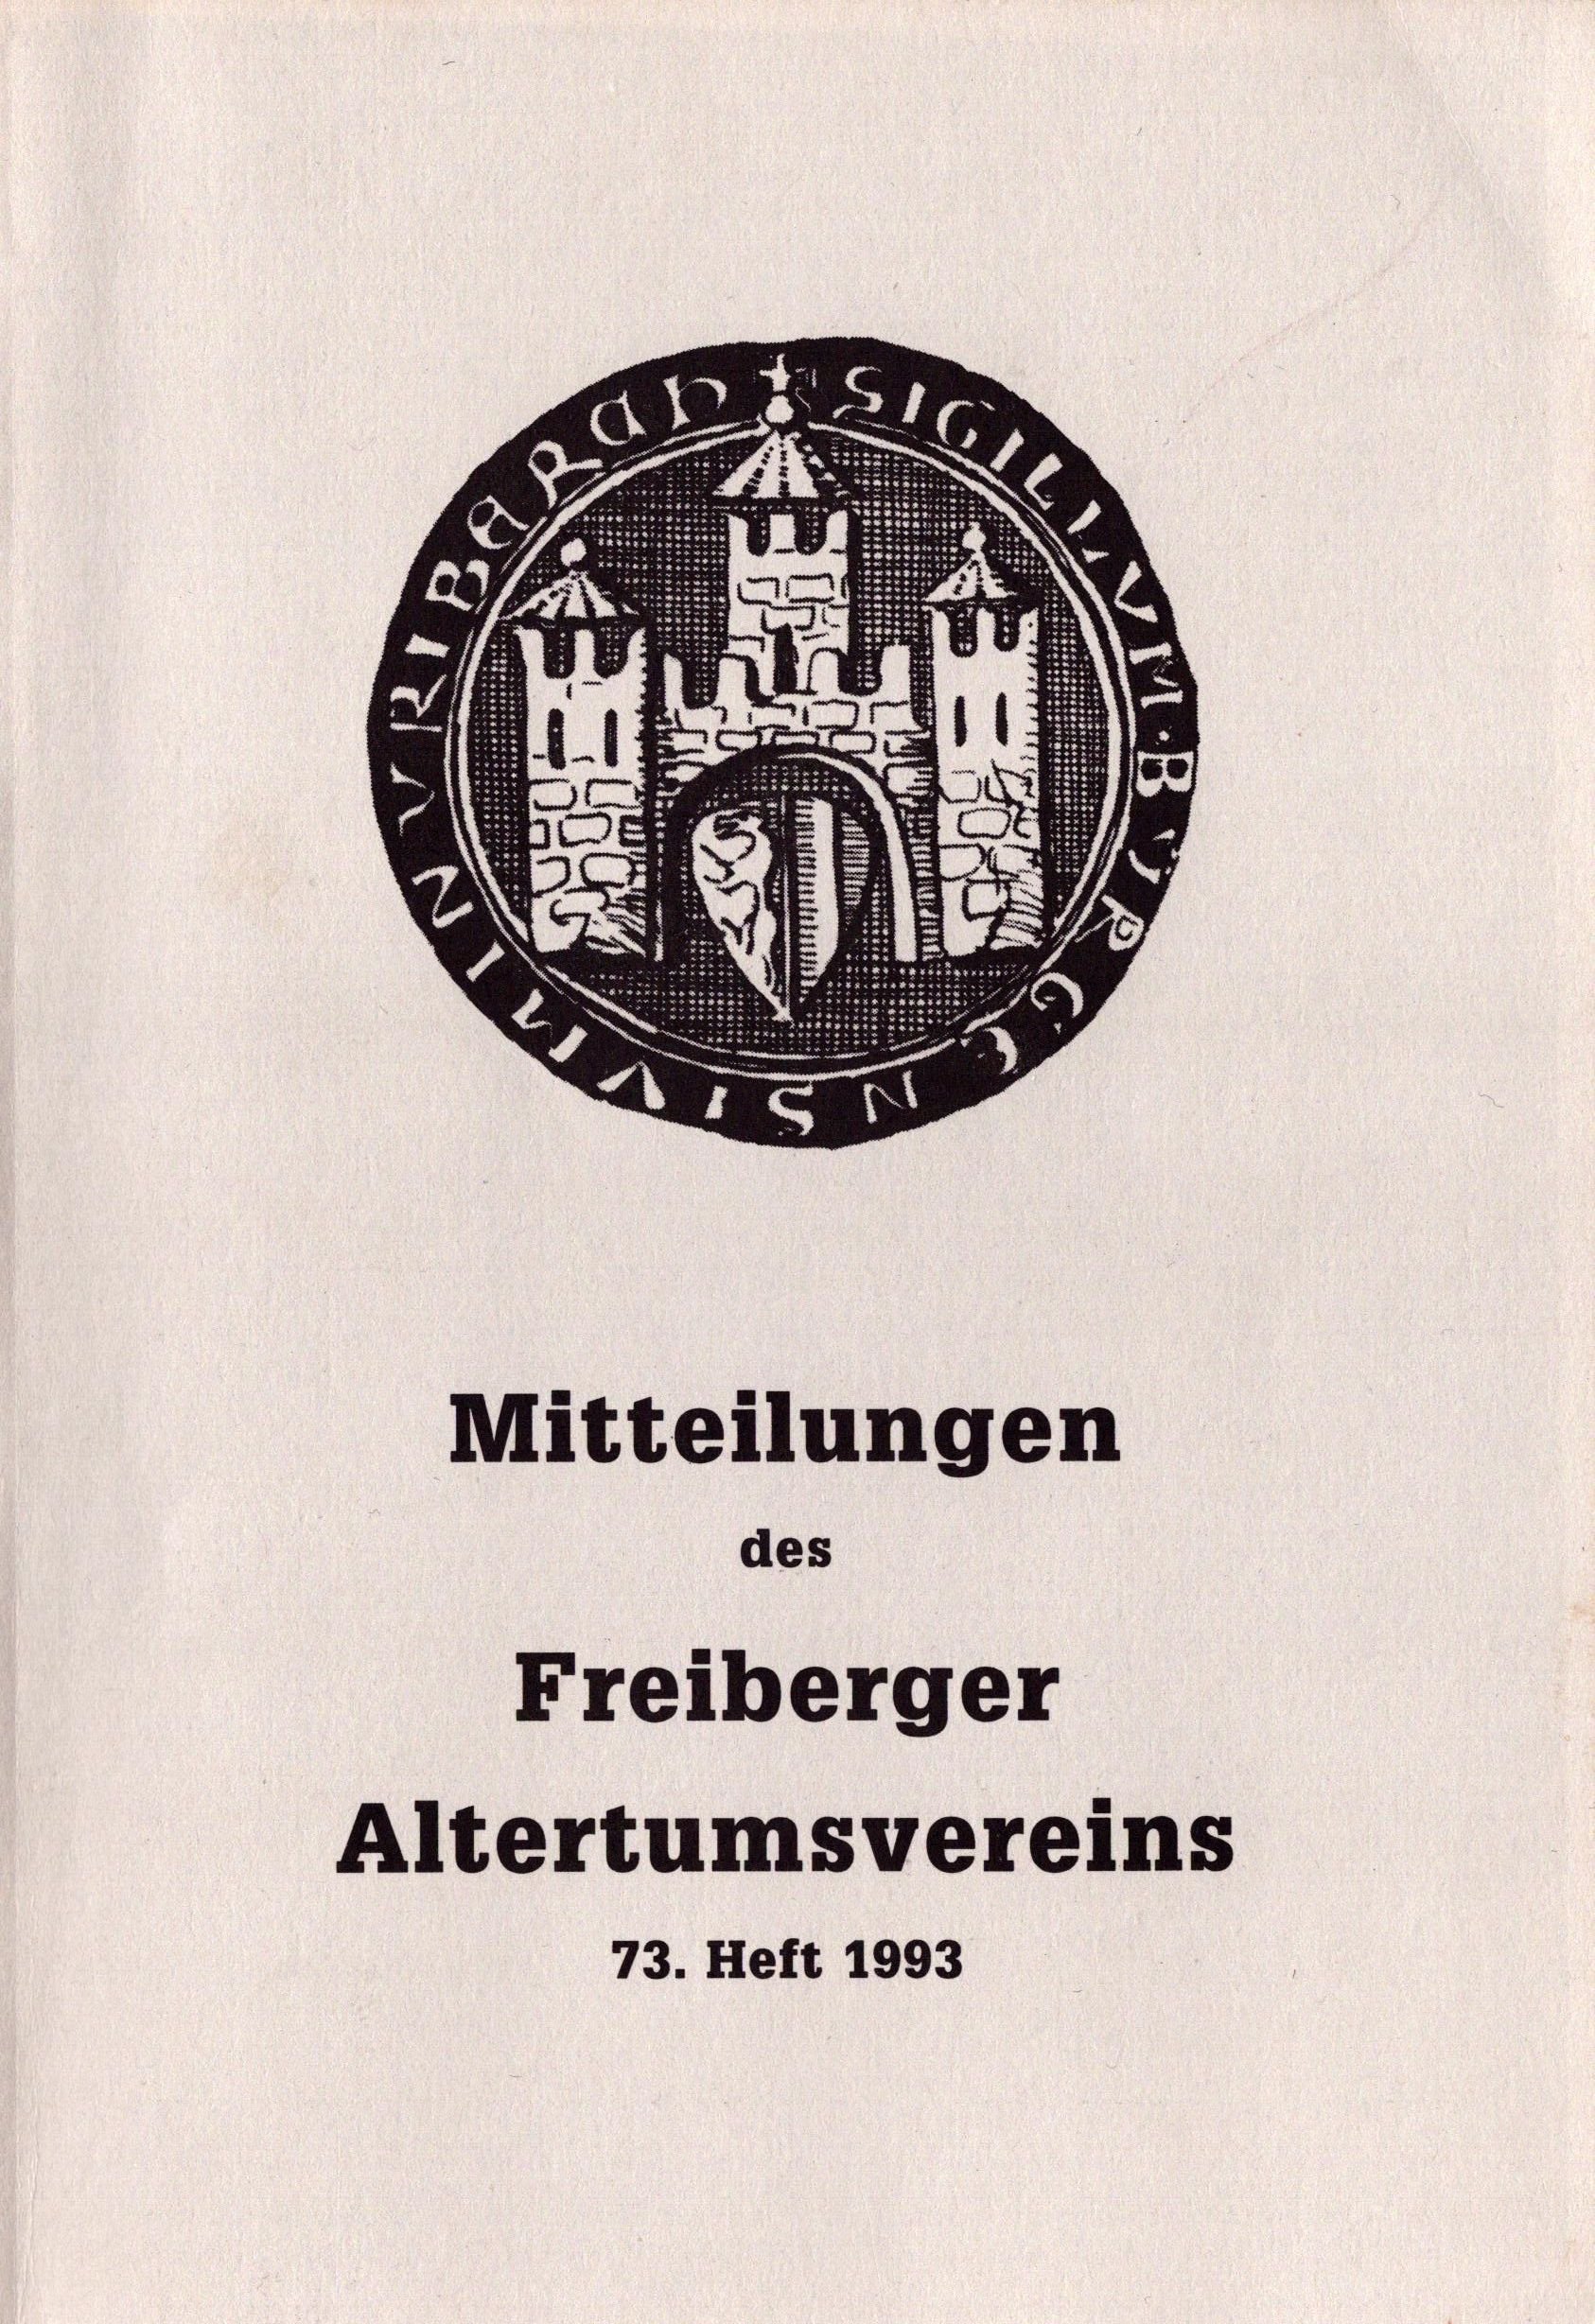 Mitteilungen des Freiberger Altertumsvereins - 73. Heft 1993 (Archiv SAXONIA-FREIBERG-STIFTUNG CC BY-NC-SA)